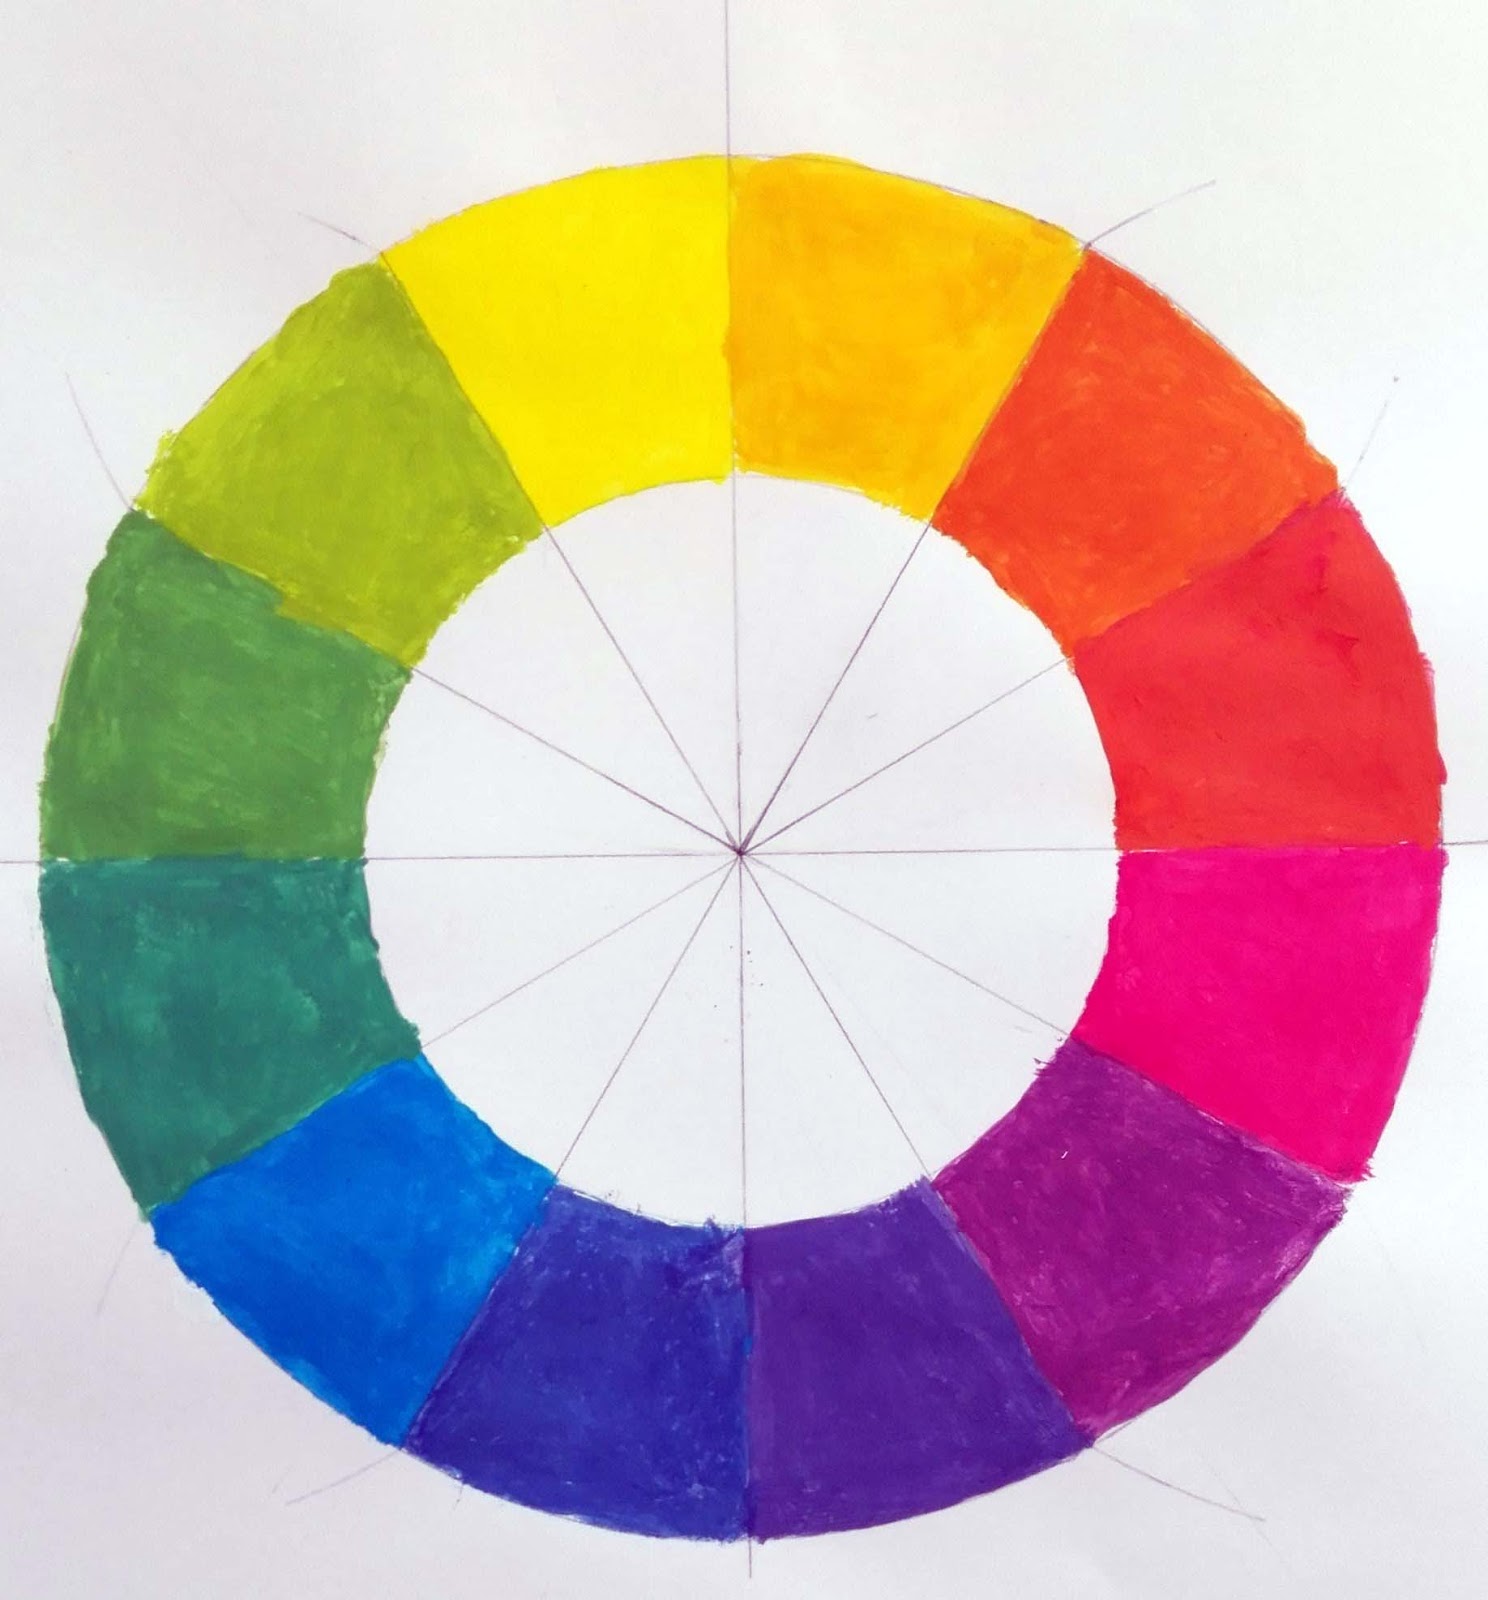 25 Ideas De Circulo Cromatico Circulo Cromatico Clases De Arte Images